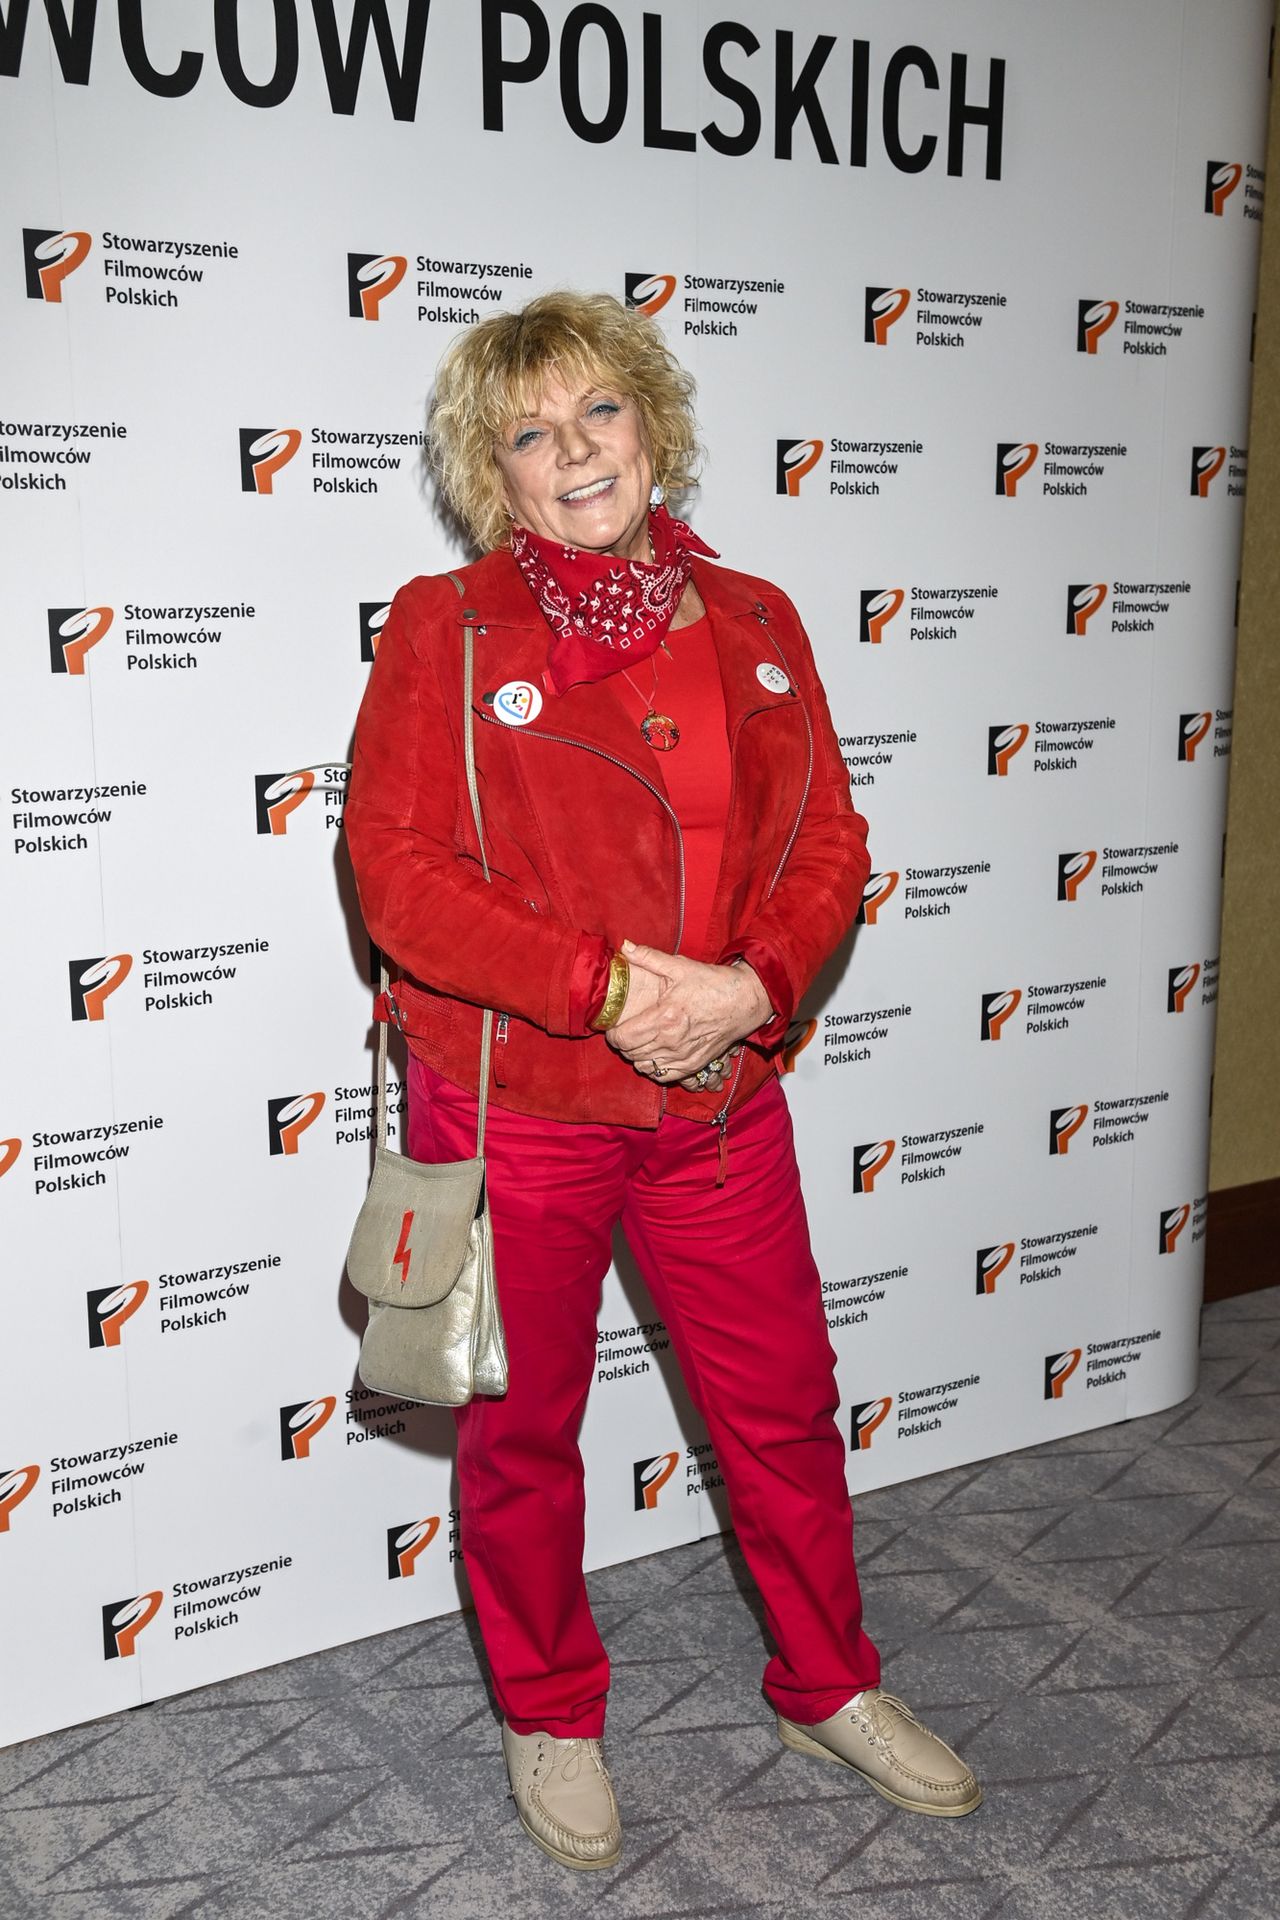 Dorota Stalińska zapozowała w czerwonej stylizacji. Do kurtki przypięła znaczek "konstytucja"